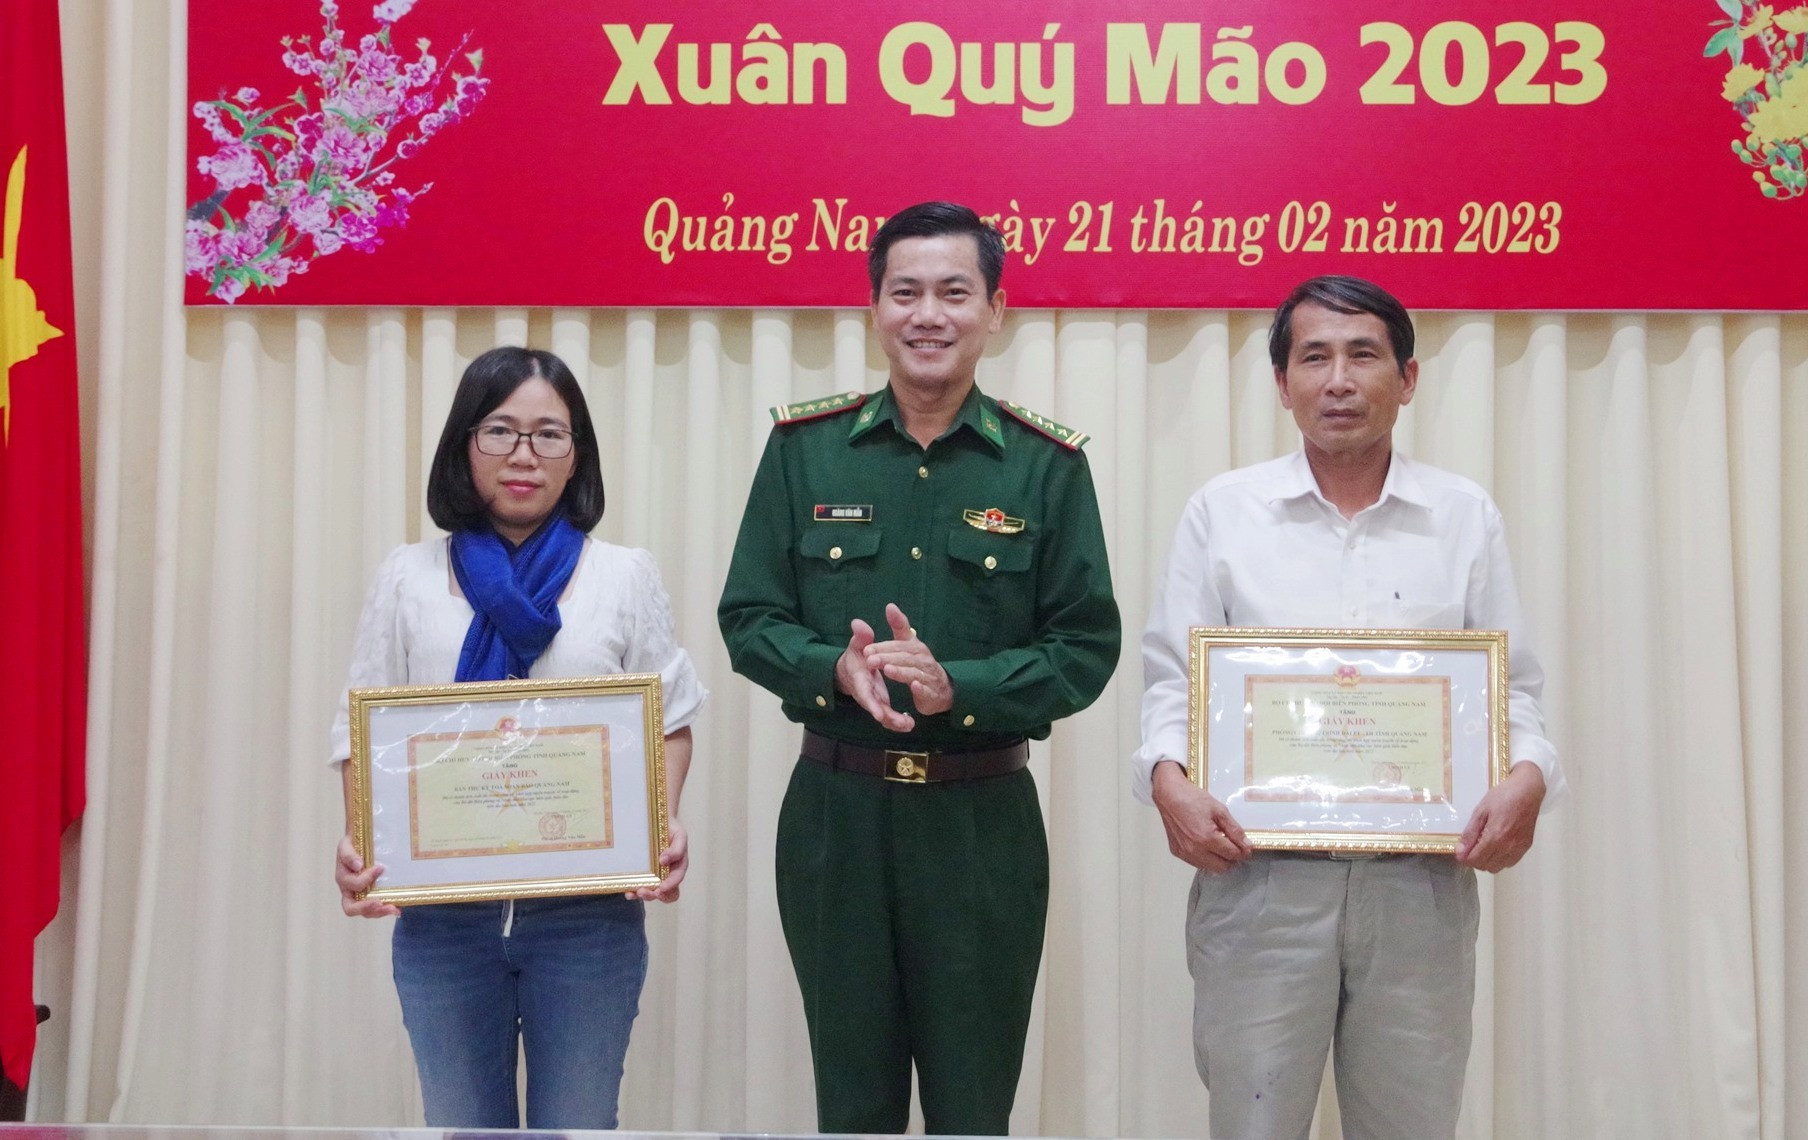 Đại tá Hoàng Văn Mẫn - Chính ủy BĐBP tỉnh trao tặng giấy khen cho 2 tập thể có thành tích trong phối hợp công tác tuyên truyền năm 2022. Ảnh: HUỲNH CHÍN